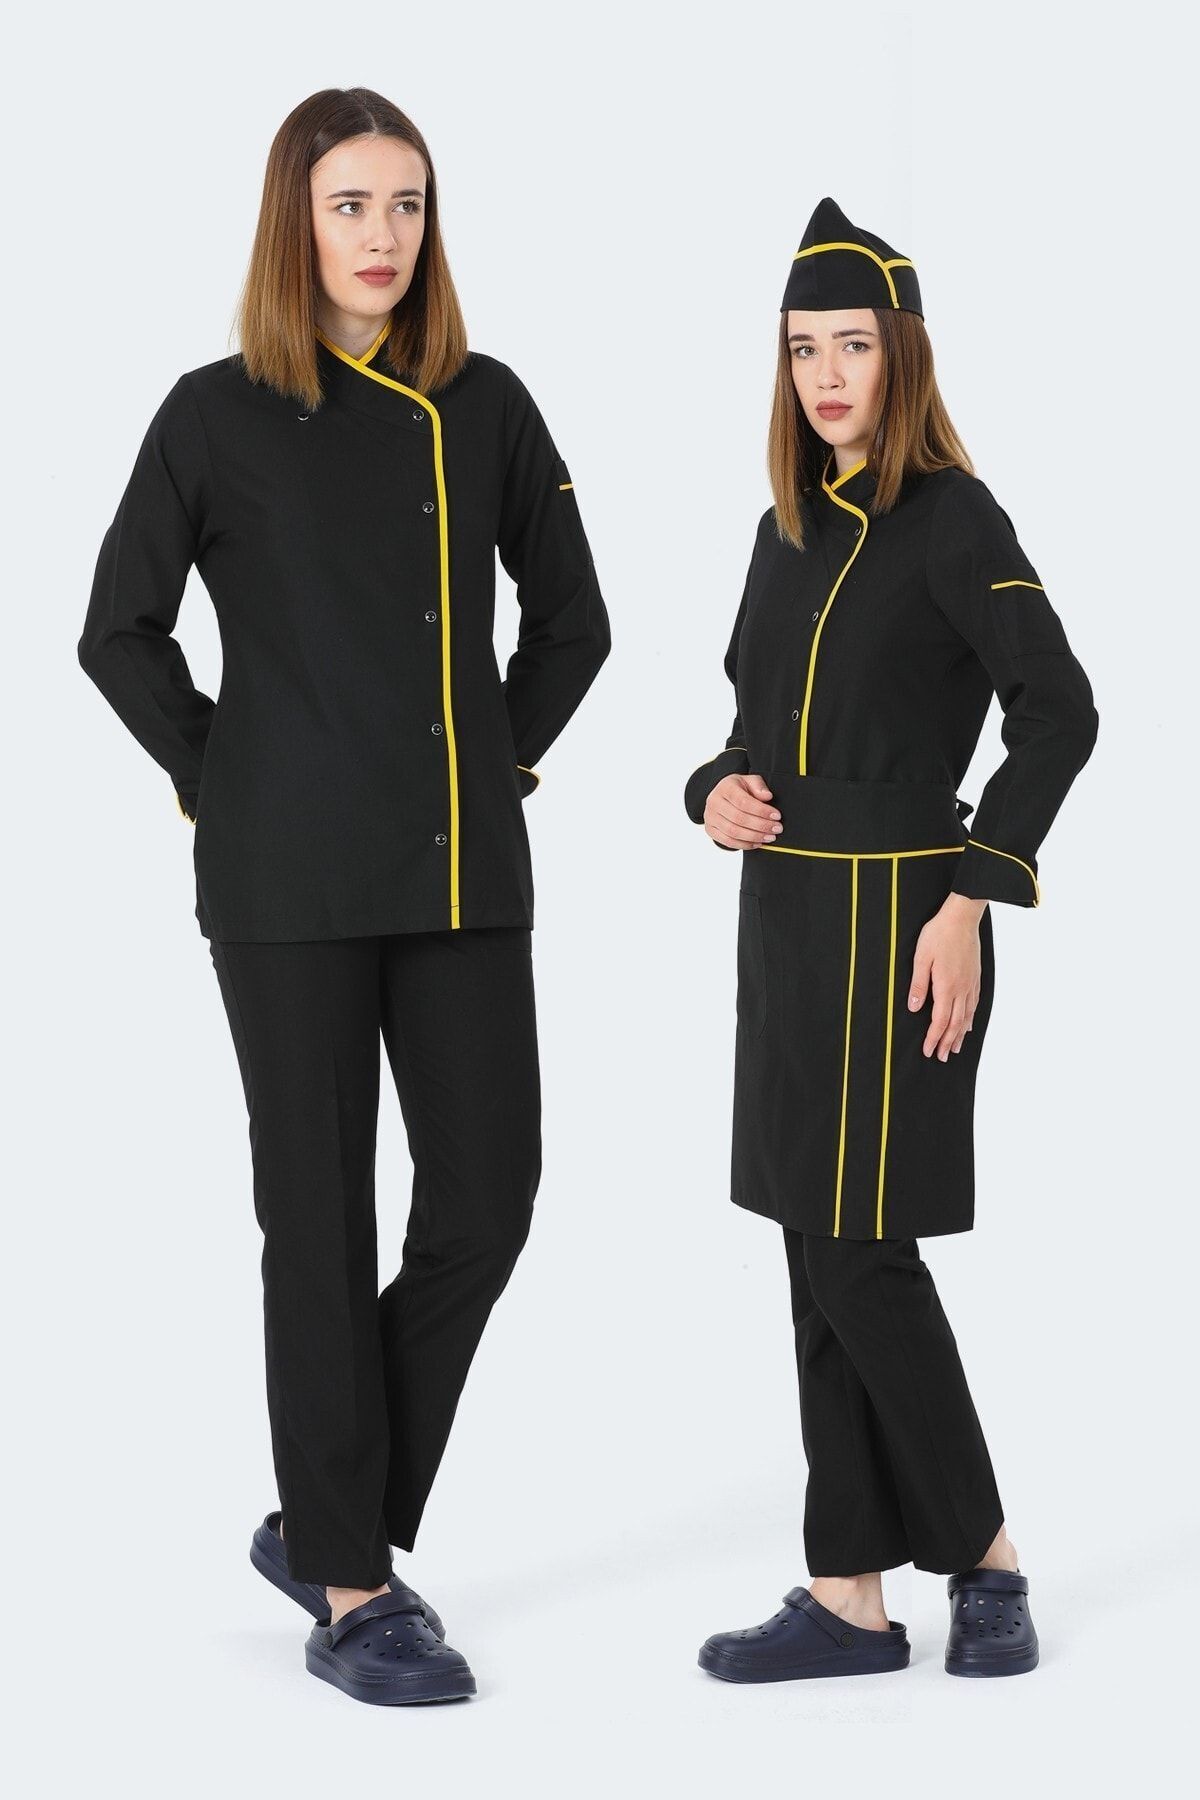 TIPTEKS Kadın Uzun Kol Siyah - Sarı Aşçı Ceket + Aşçı Pantolon + Bel Önlük Ve Kep Dörtlü Takım